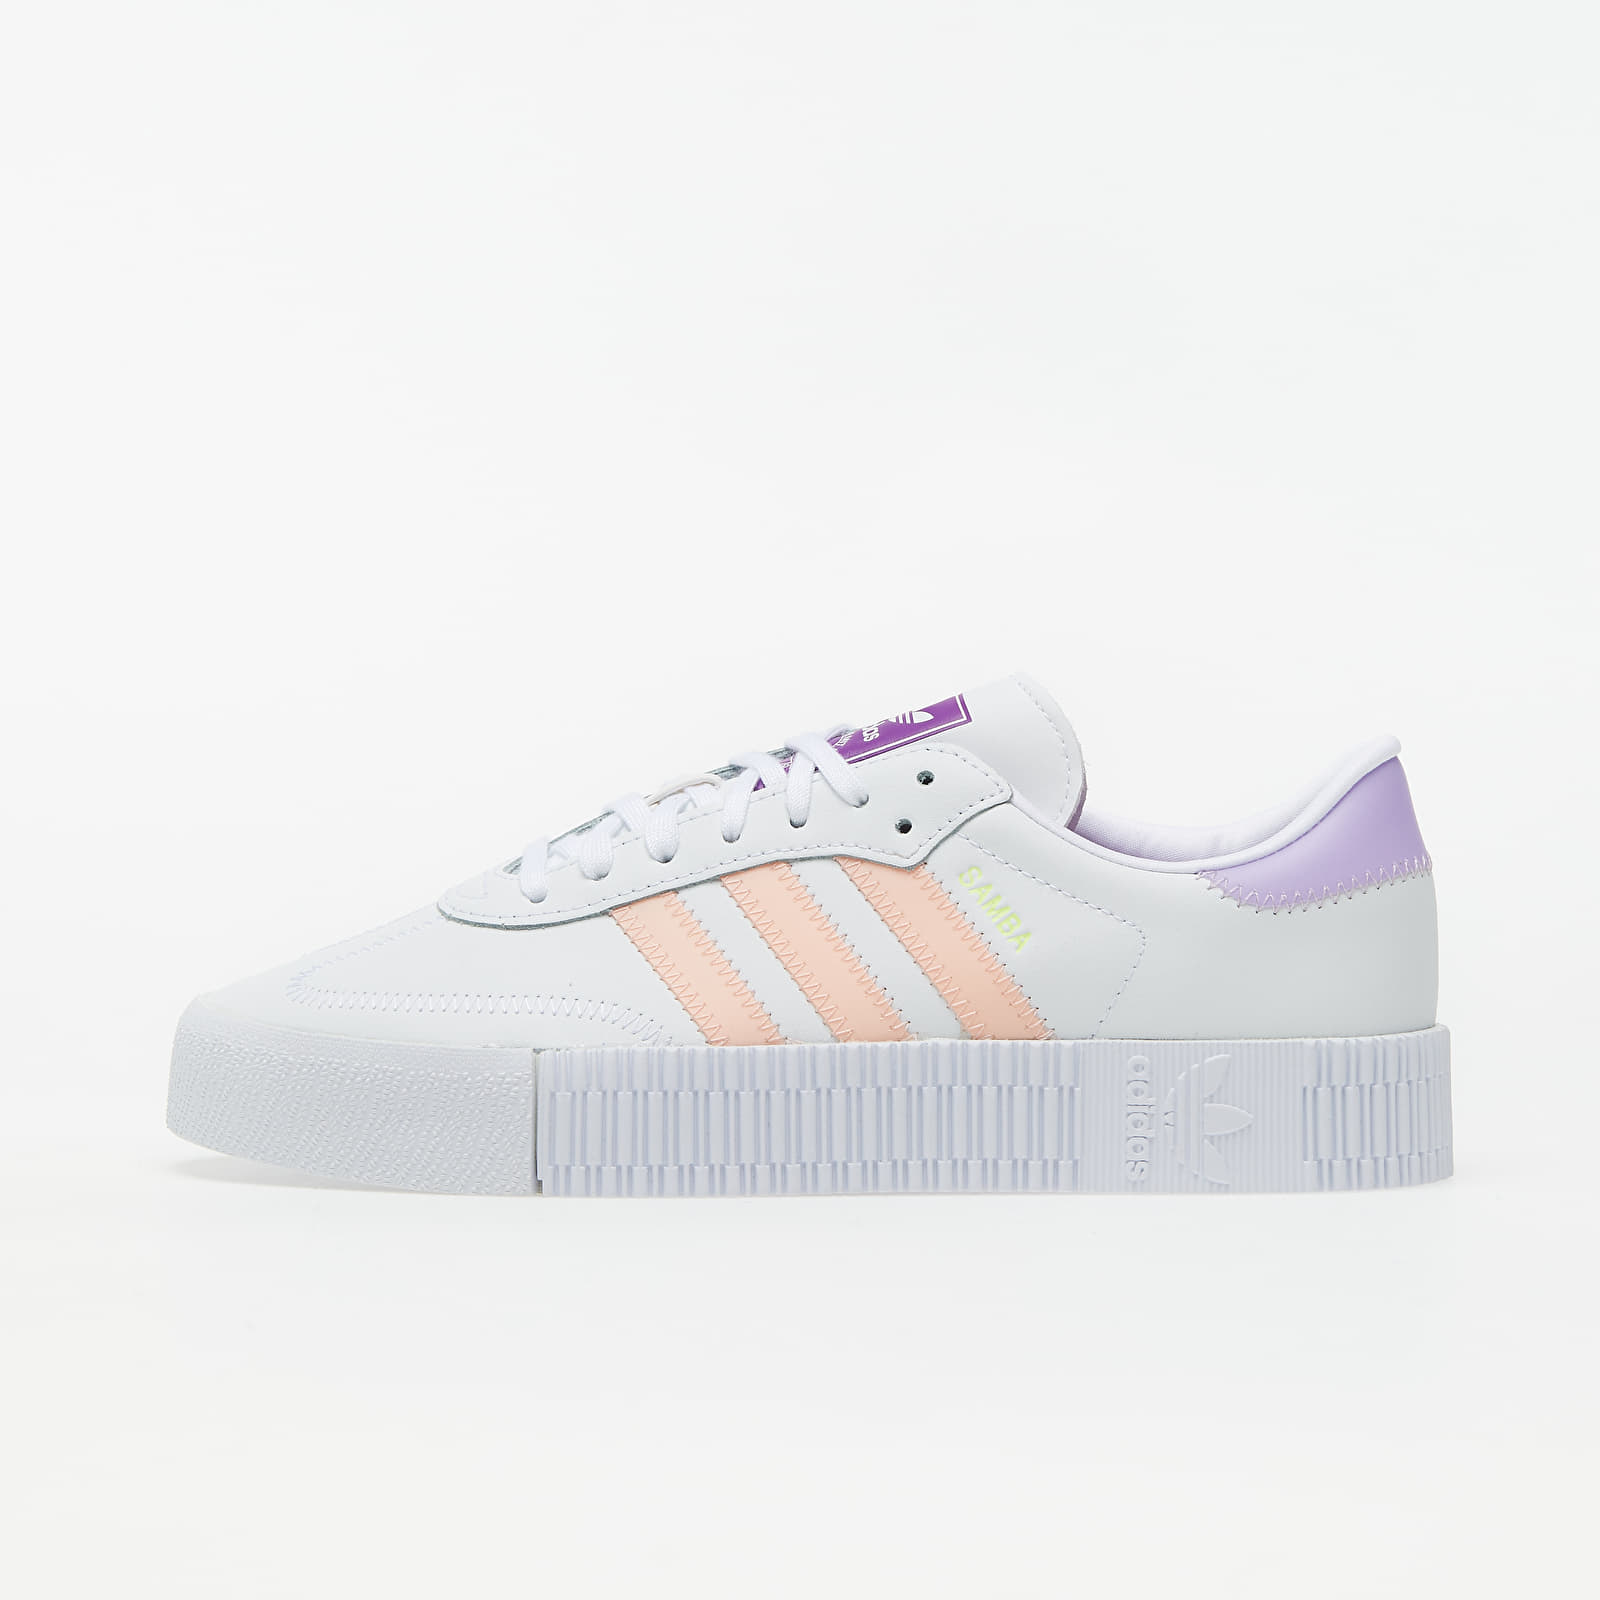 Damen Sneaker und Schuhe adidas Sambarose W Ftw White/ Haze Coral/ Shock Purple